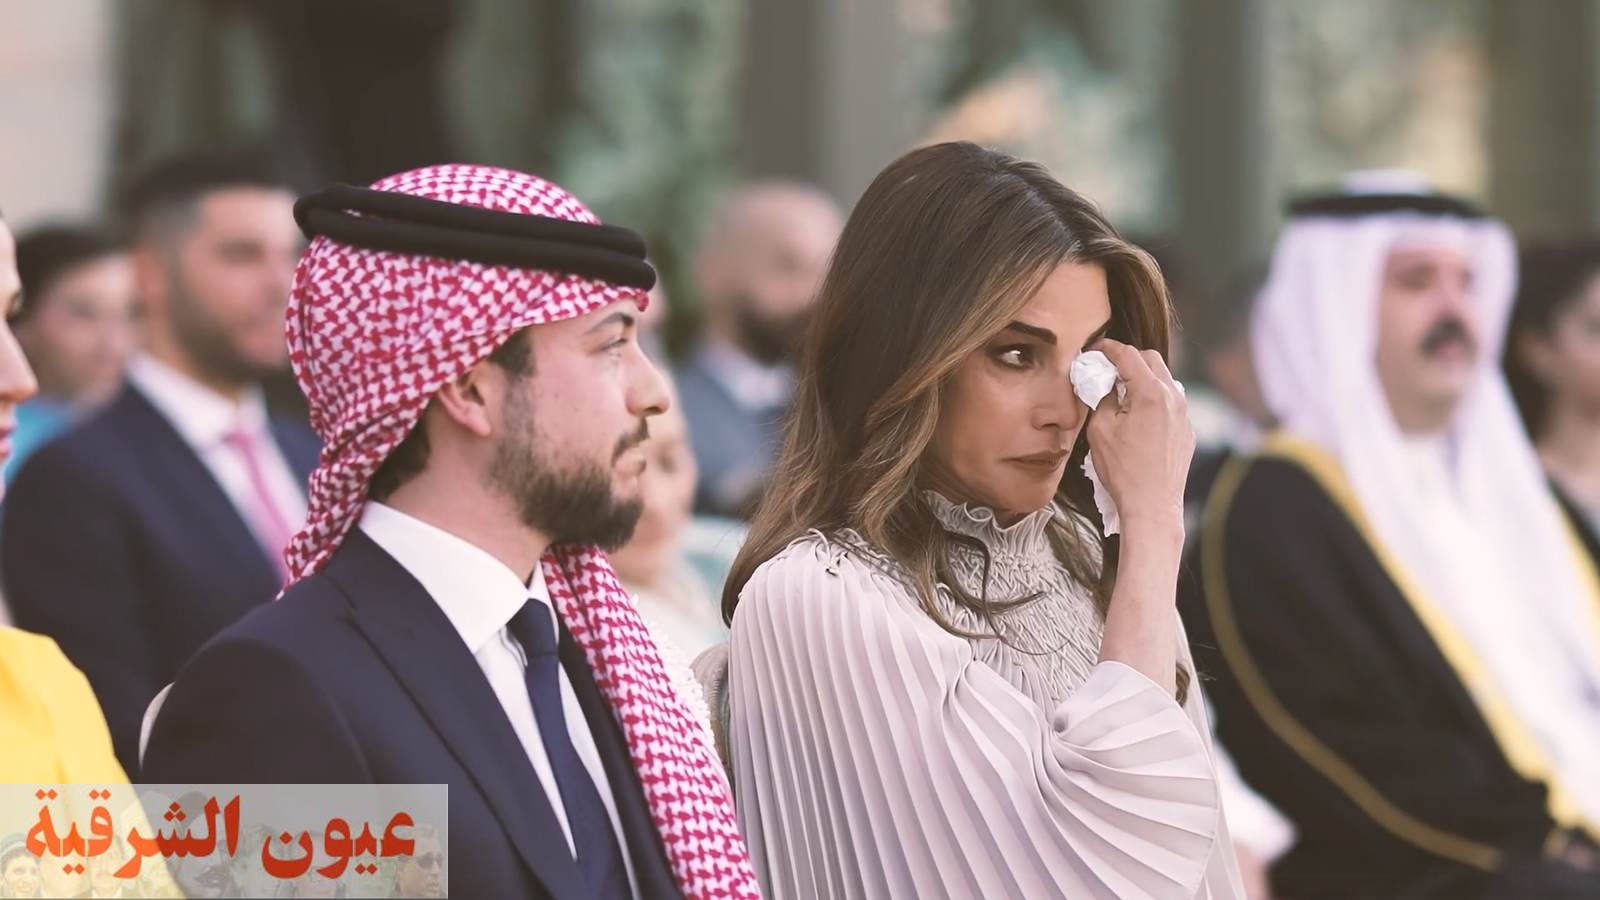 بدموع حارة.. الملكة رانيا تنشر صورا تظهر حزنها على فراق ابنتها